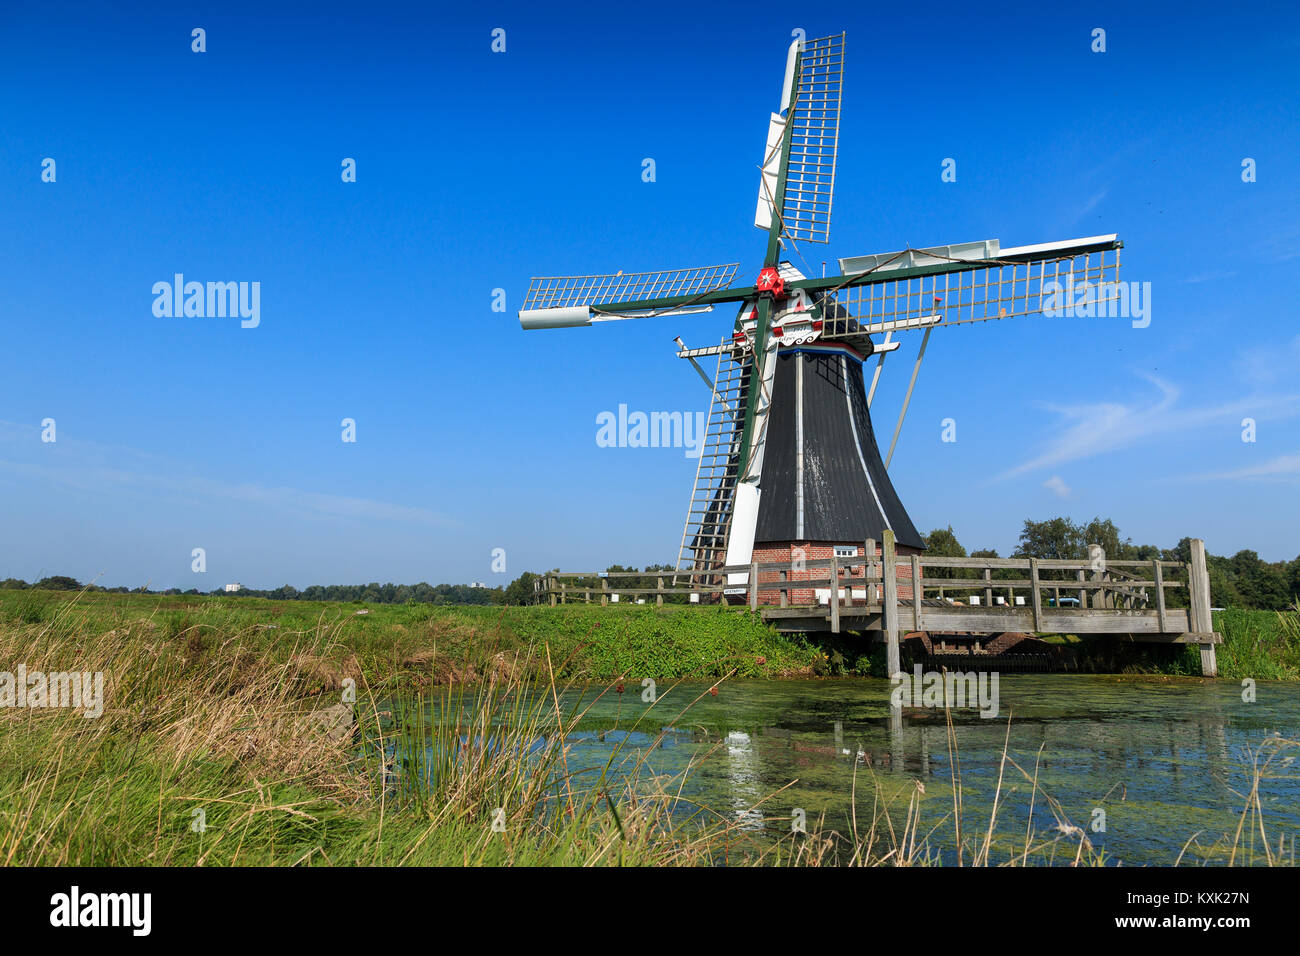 Historic windmill in water landscape. Windmill De Helper near Haren in Groningen, The Netherlands. Stock Photo